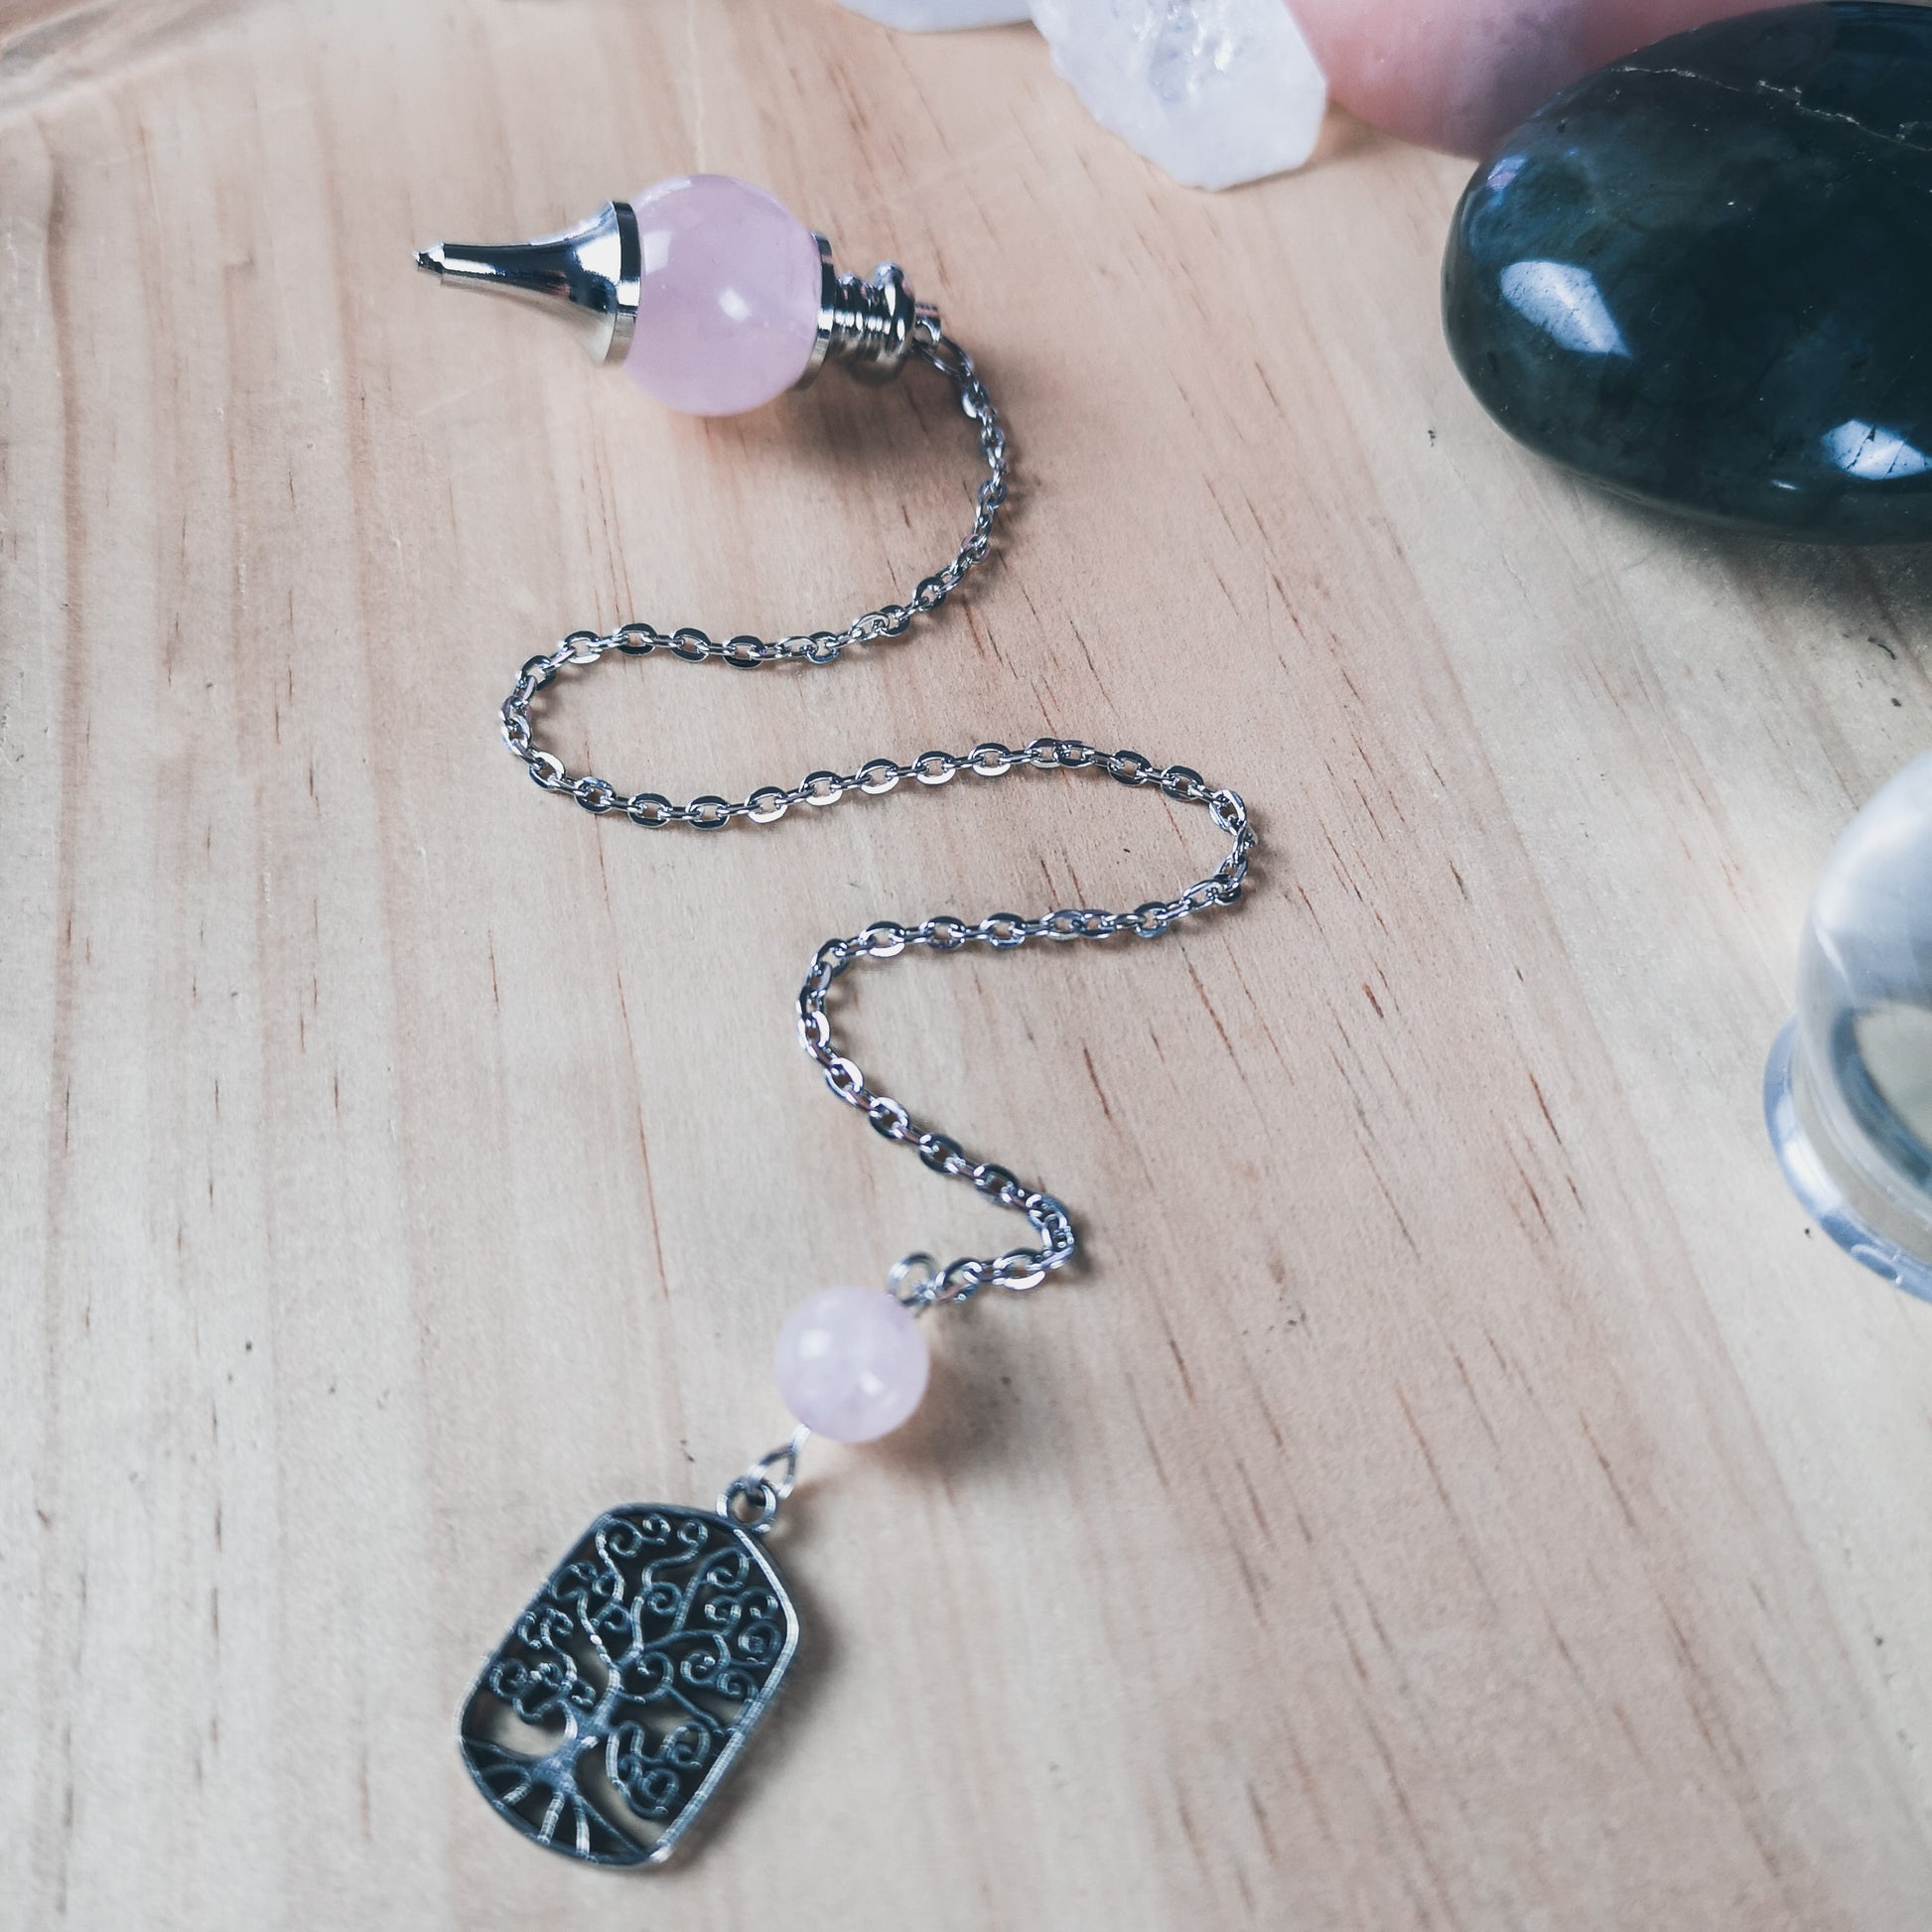 Rose quartz and tree of life Sephoroton dowsing pendulum Baguette Magick